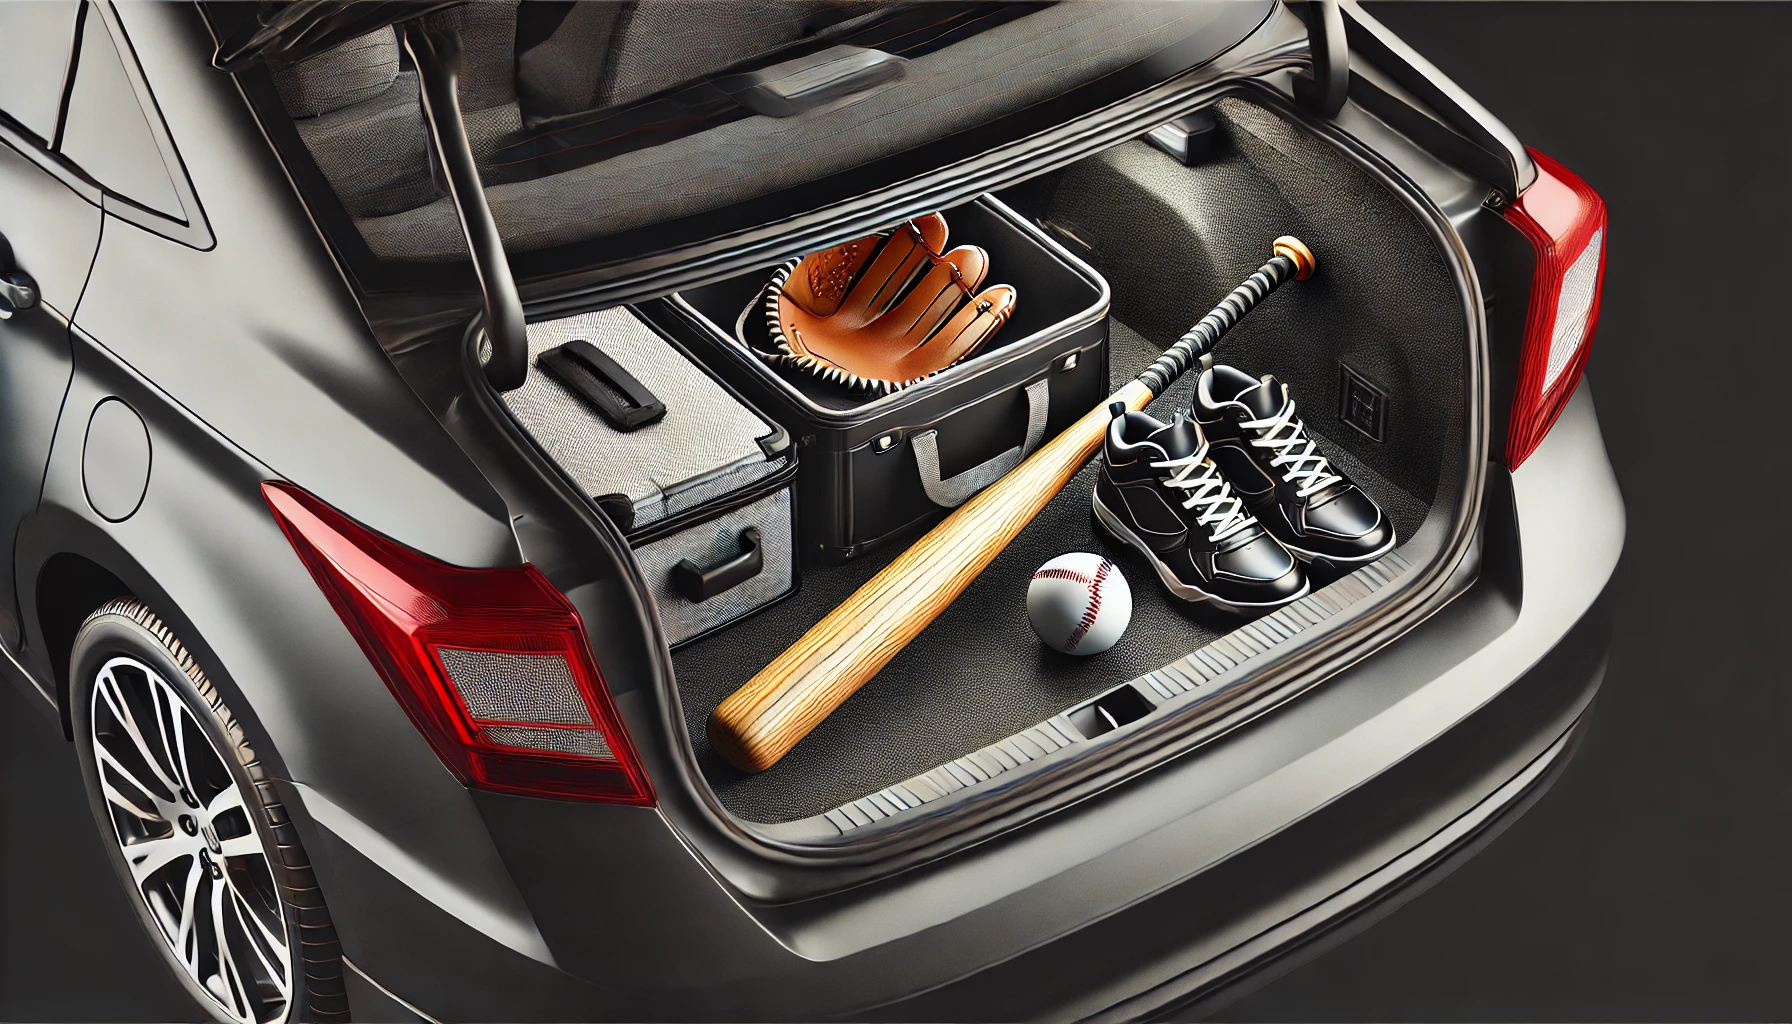 Baseballschläger im Auto – verboten oder erlaubt